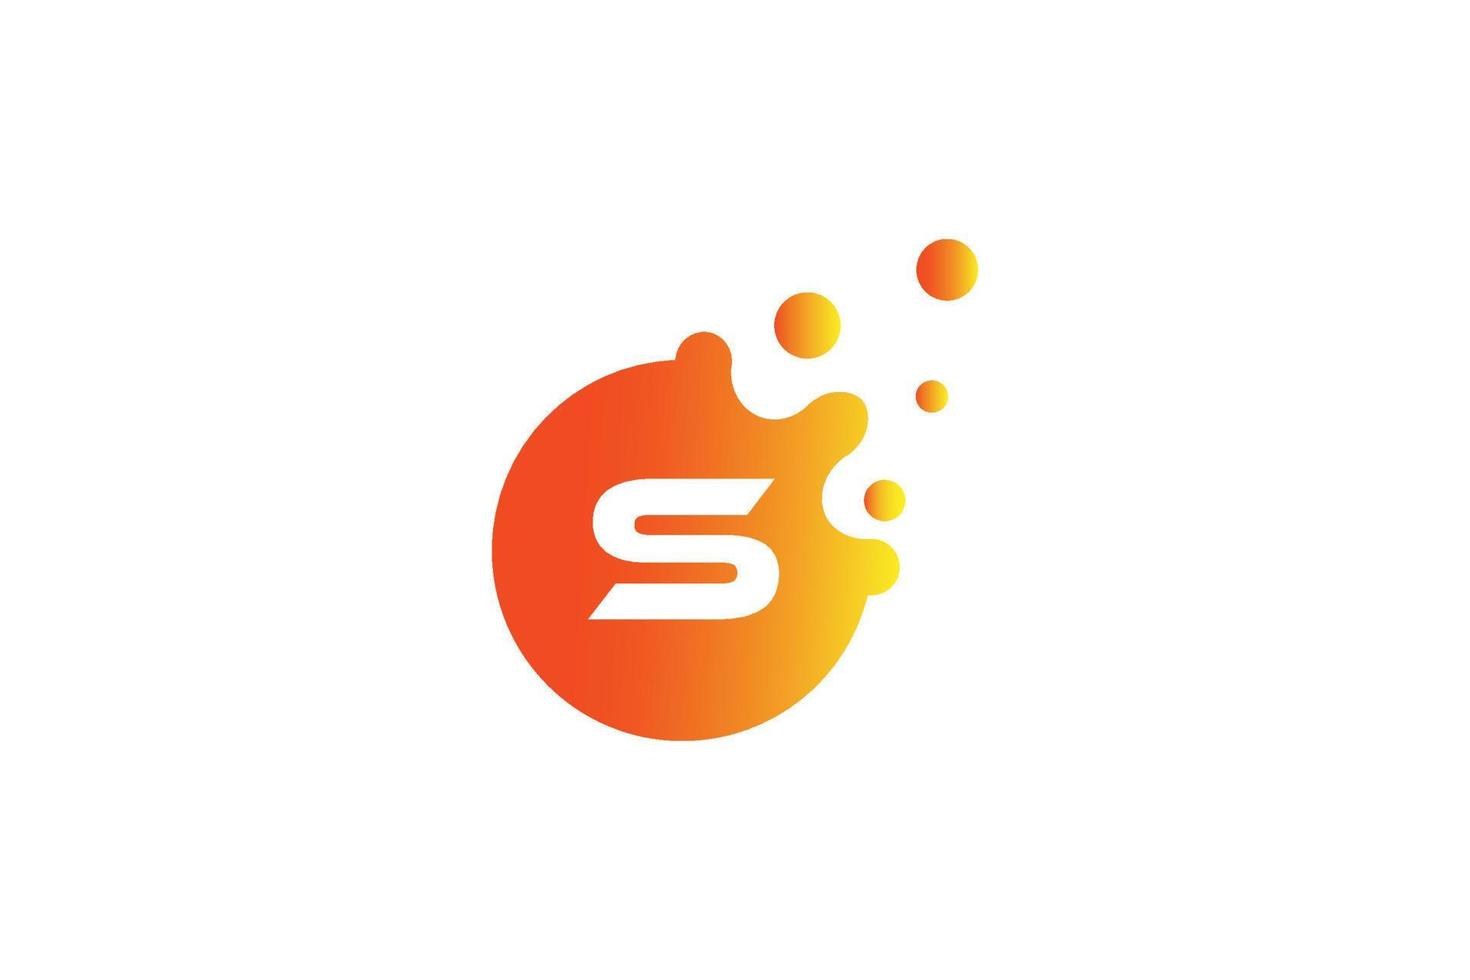 brief s logo . s brief ontwerp vector met dots vector illustratie . brief Mark logo met oranje en geel verloop.